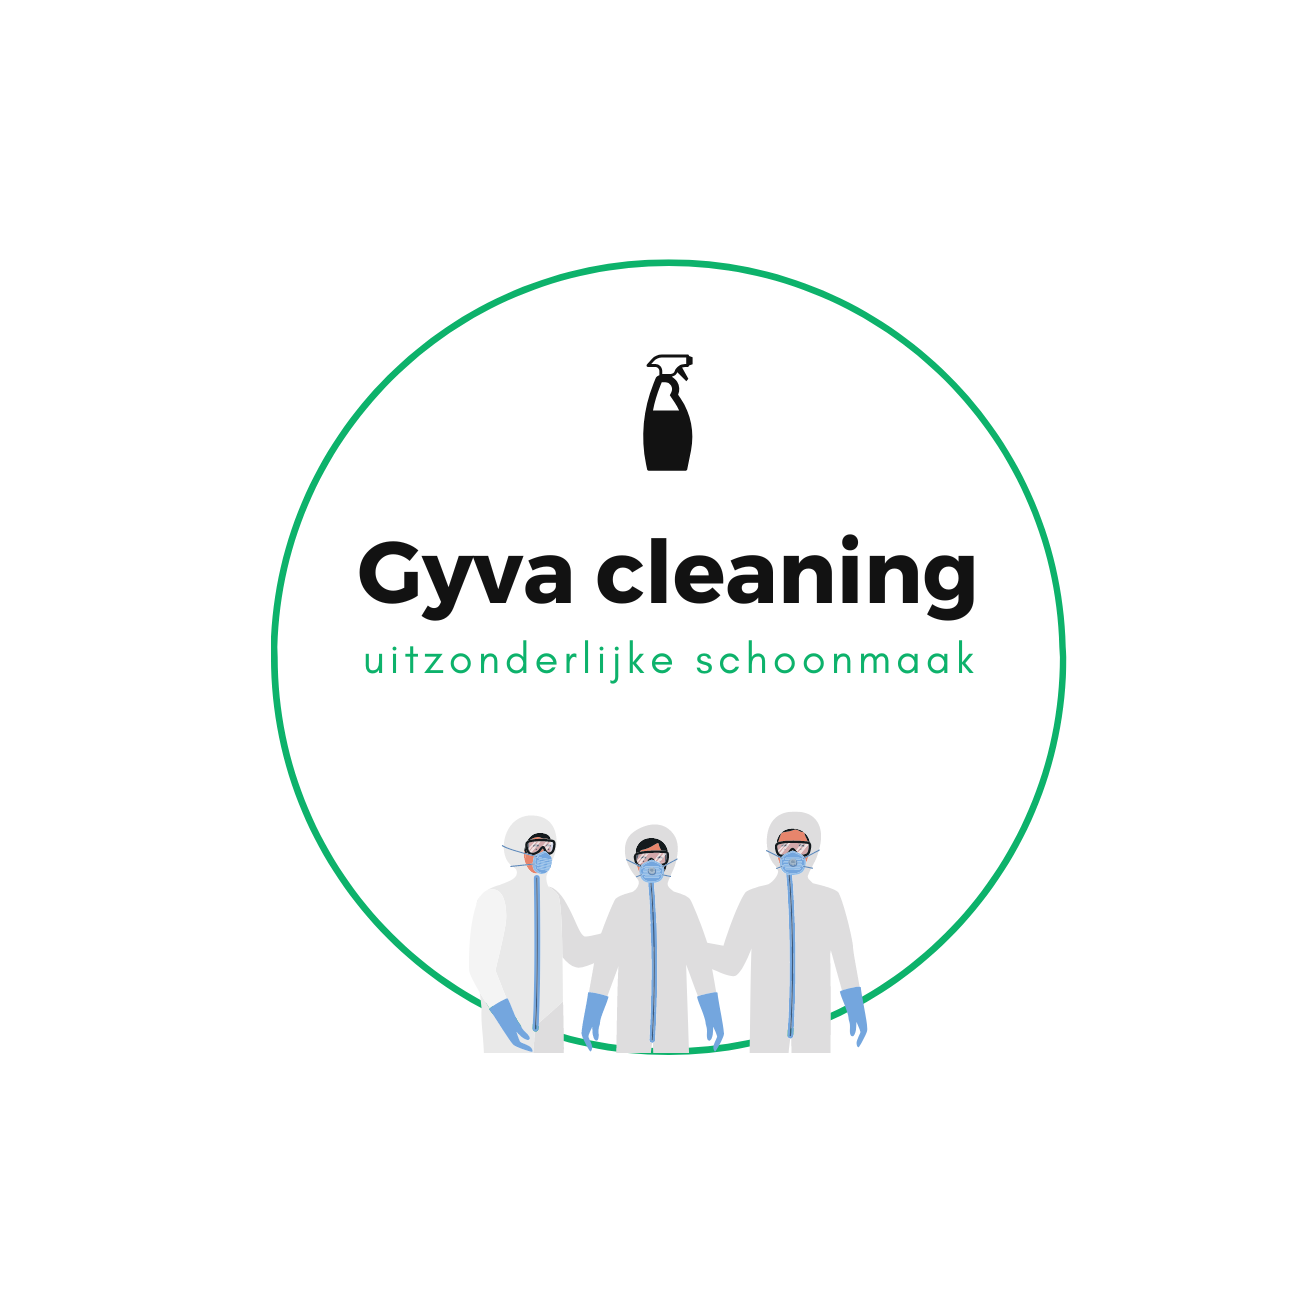 Gyva cleaning pakt de extreme vervuiling aan in huizen en panden. Dit betreft zowel reinigen van sterk vervuilde woningen, verzamelwoede, schoonmaak na misdaad, overlijden e.d. 